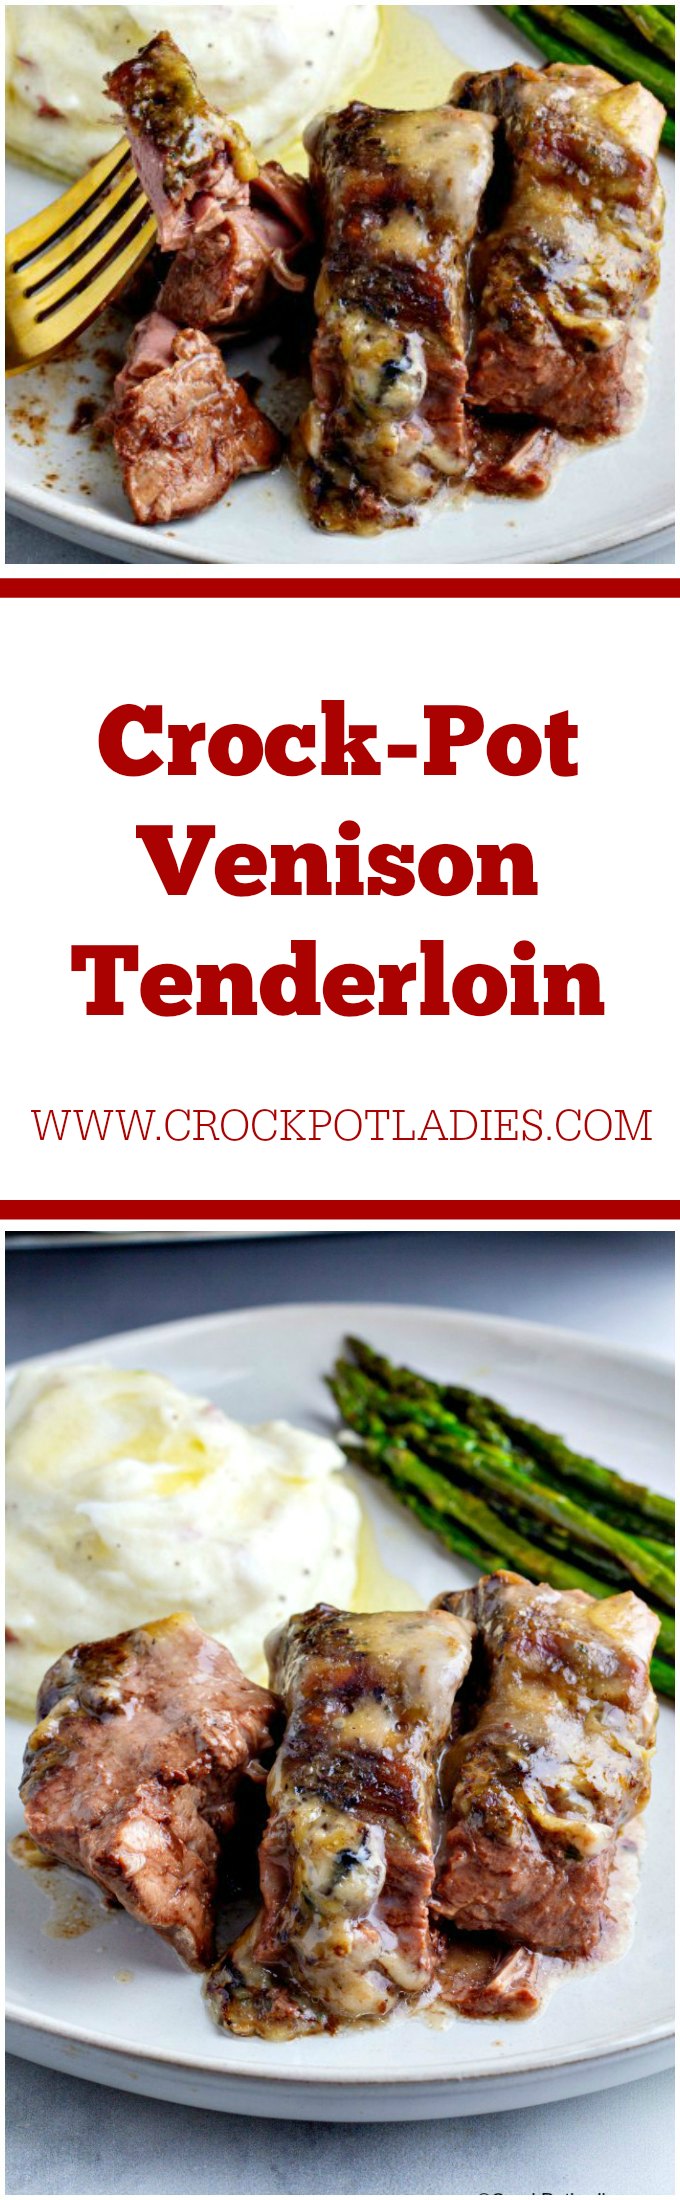 Crock-Pot Venison Tenderloin